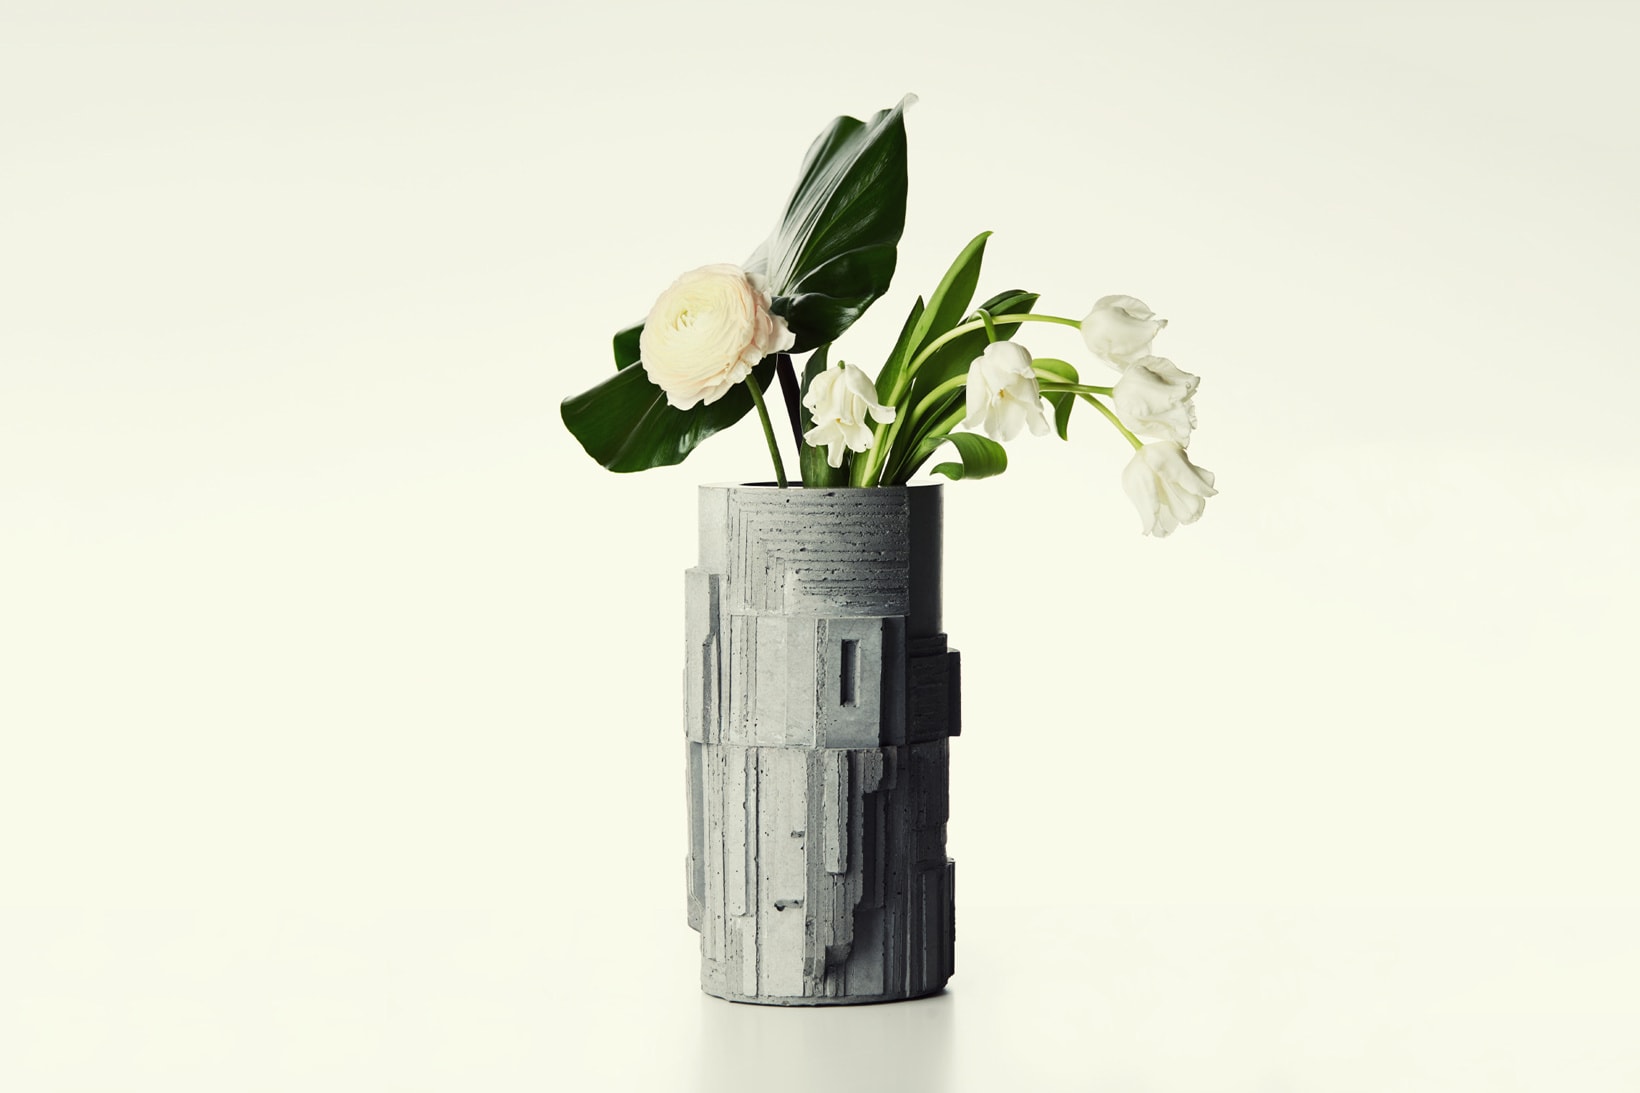 Larose Paris David Umemoto Limited Concrete Vases